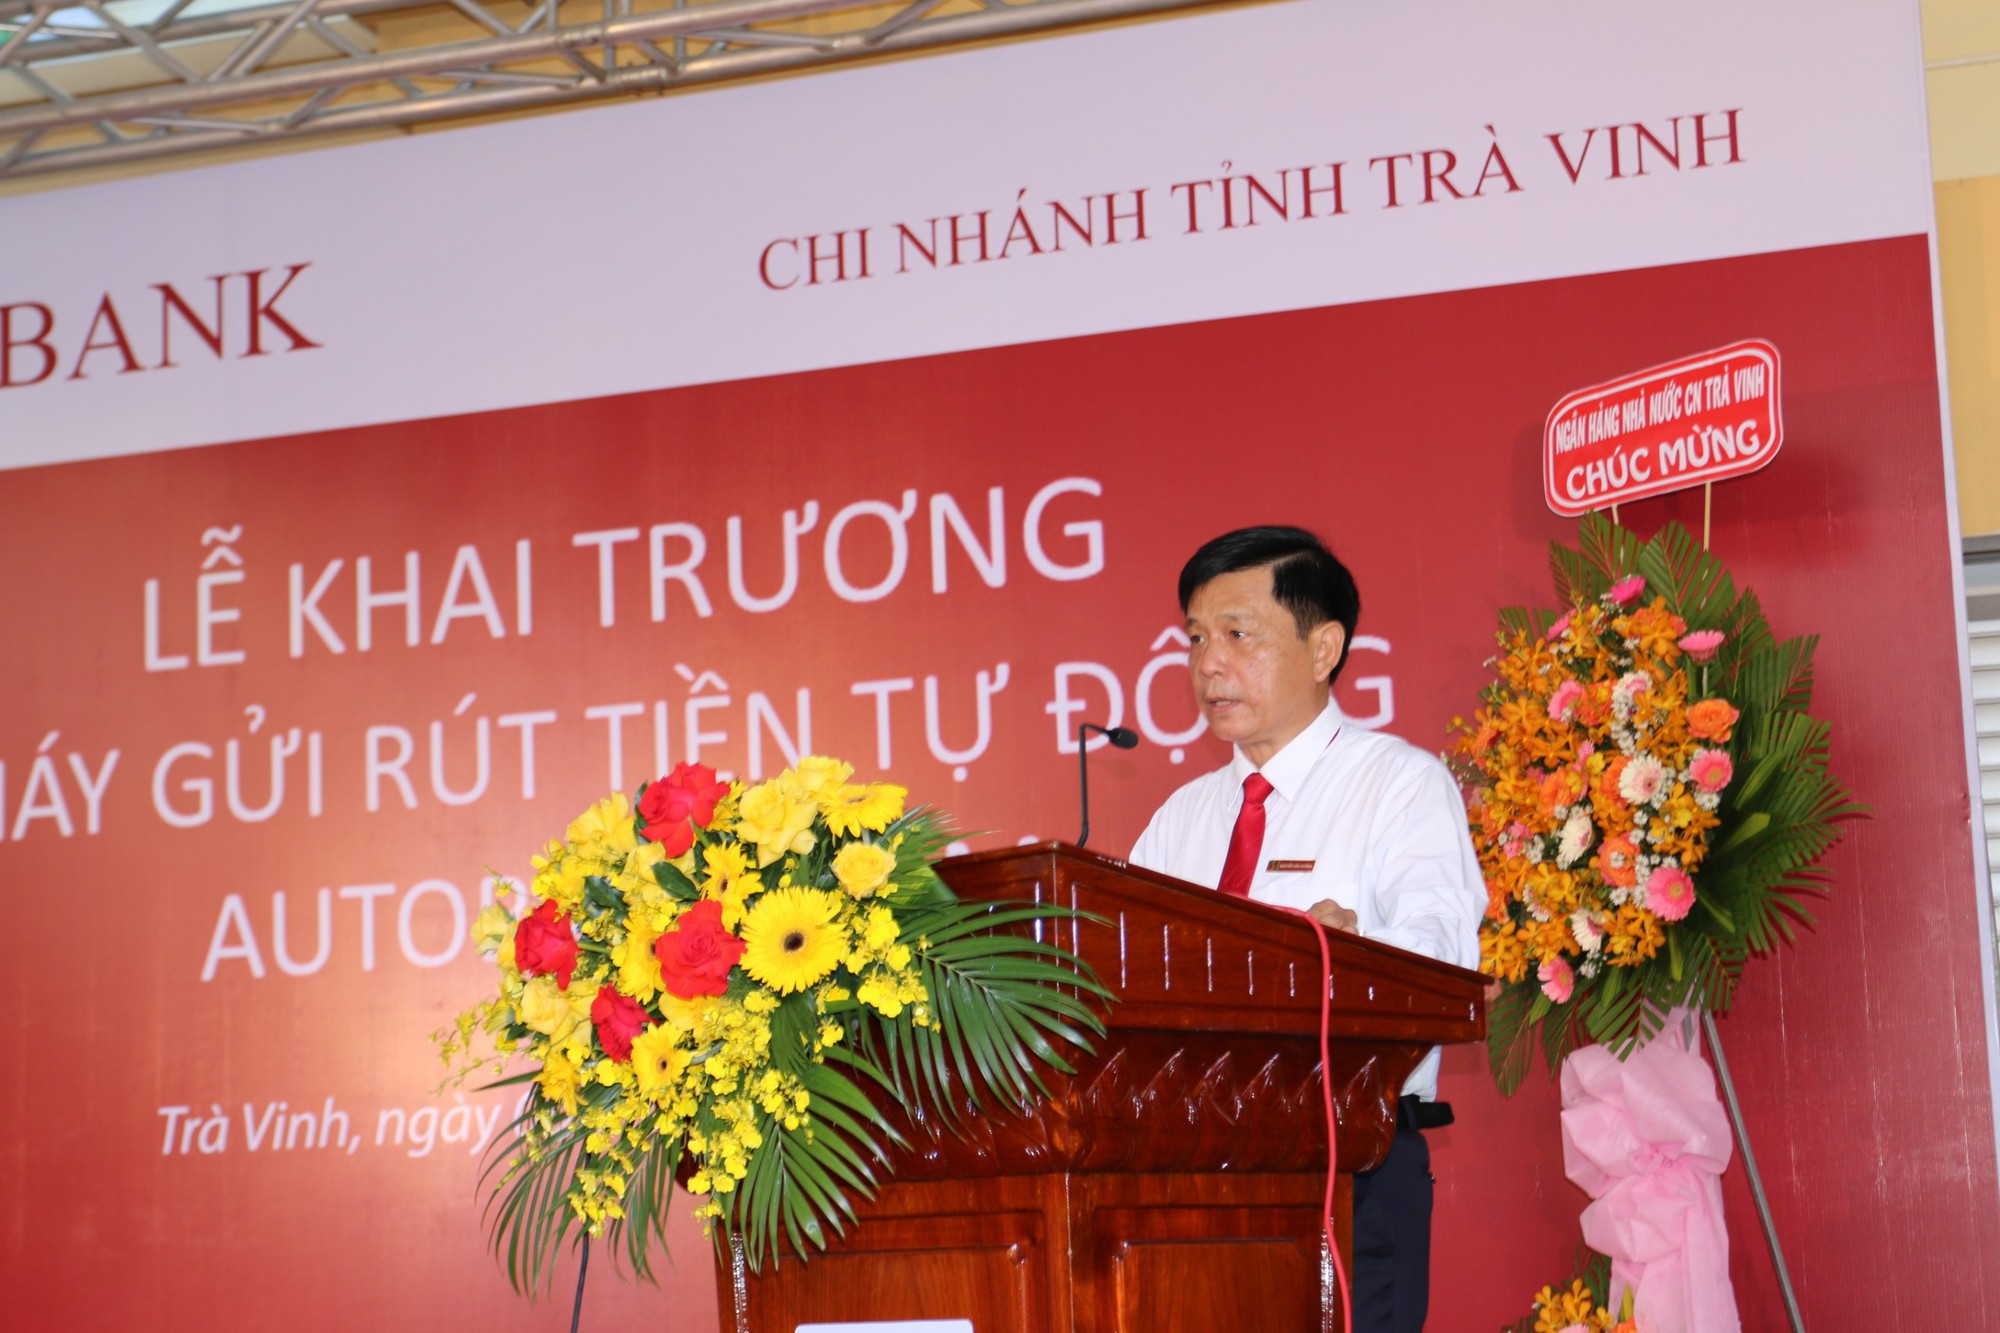 Agribank chi nhánh tỉnh Trà Vinh đưa vào hoạt động máy gửi, rút tiền tự động  - Ảnh 1.